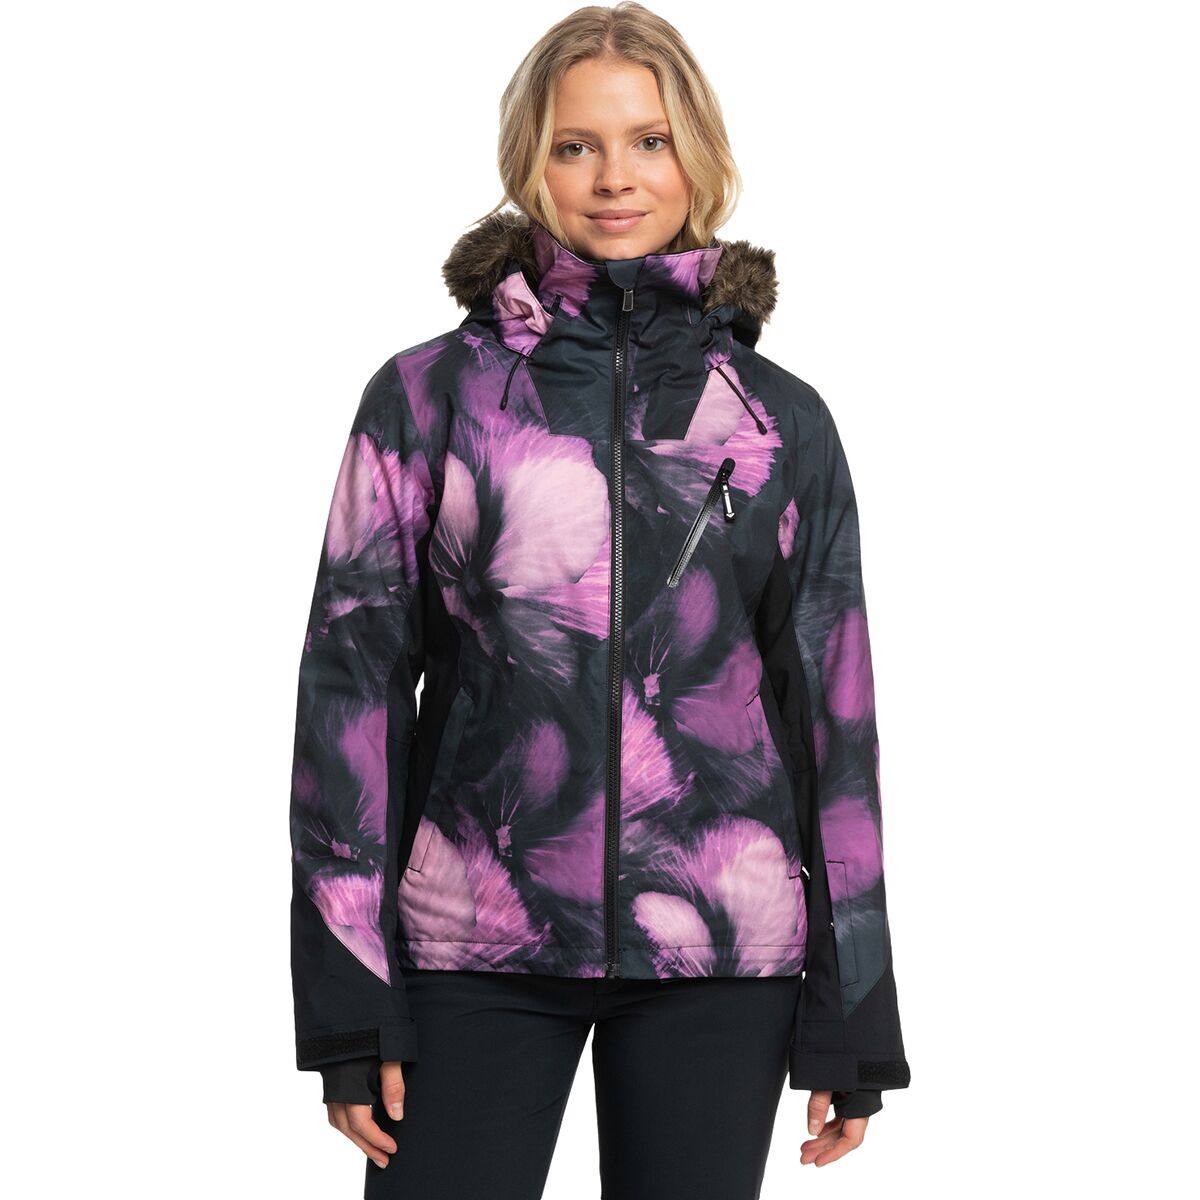 Roxy Jet Ski Premium Snow Jacket - Women's